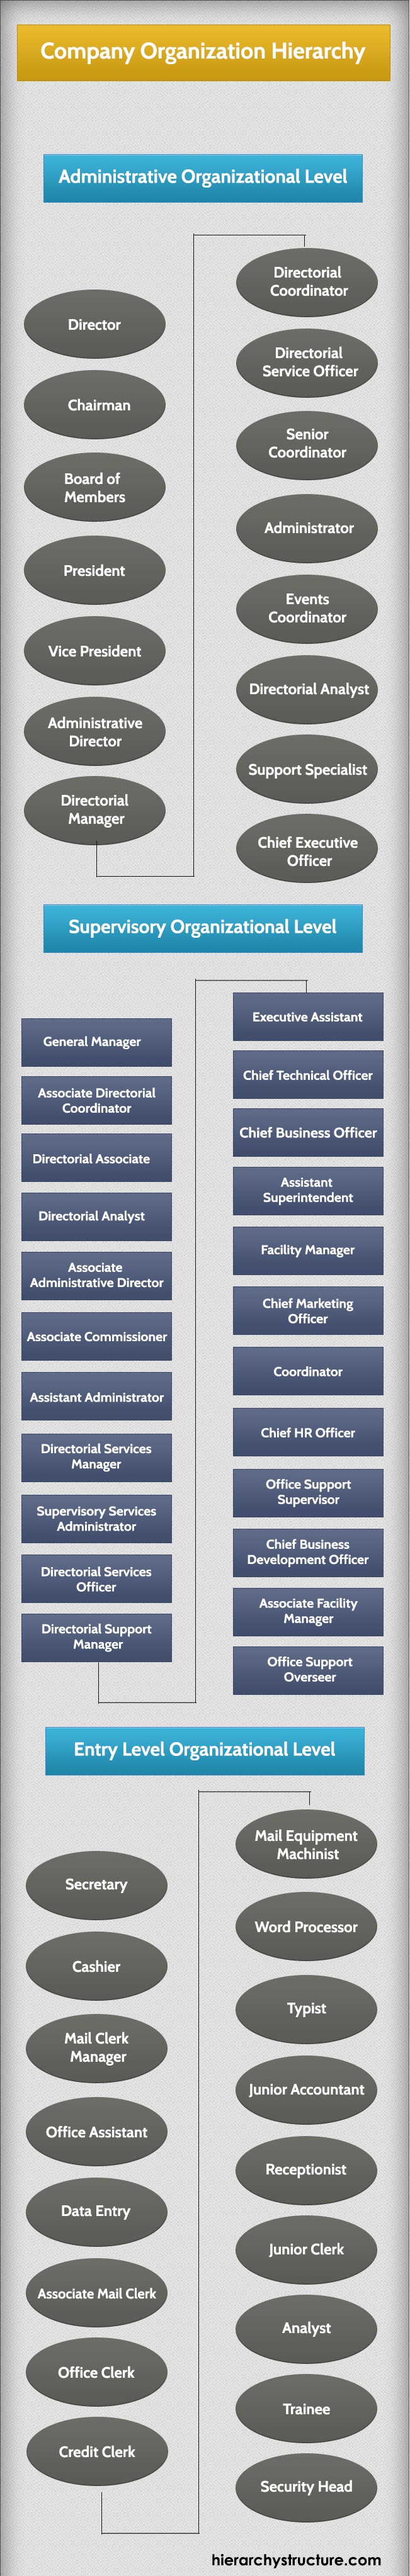 Company Organization Hierarchy